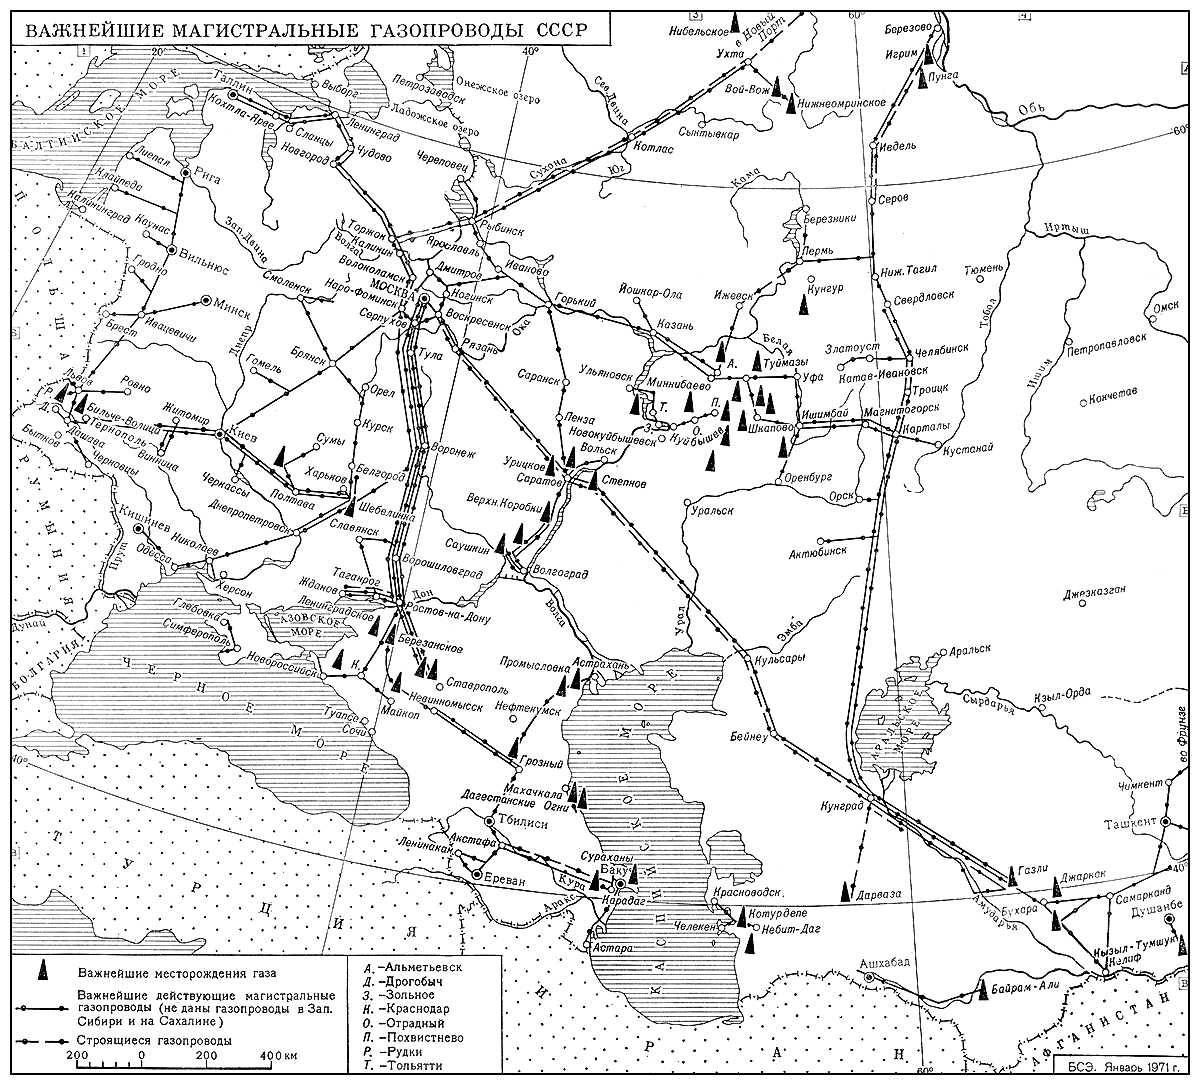 Важнейшие магистральные газопроводы СССР